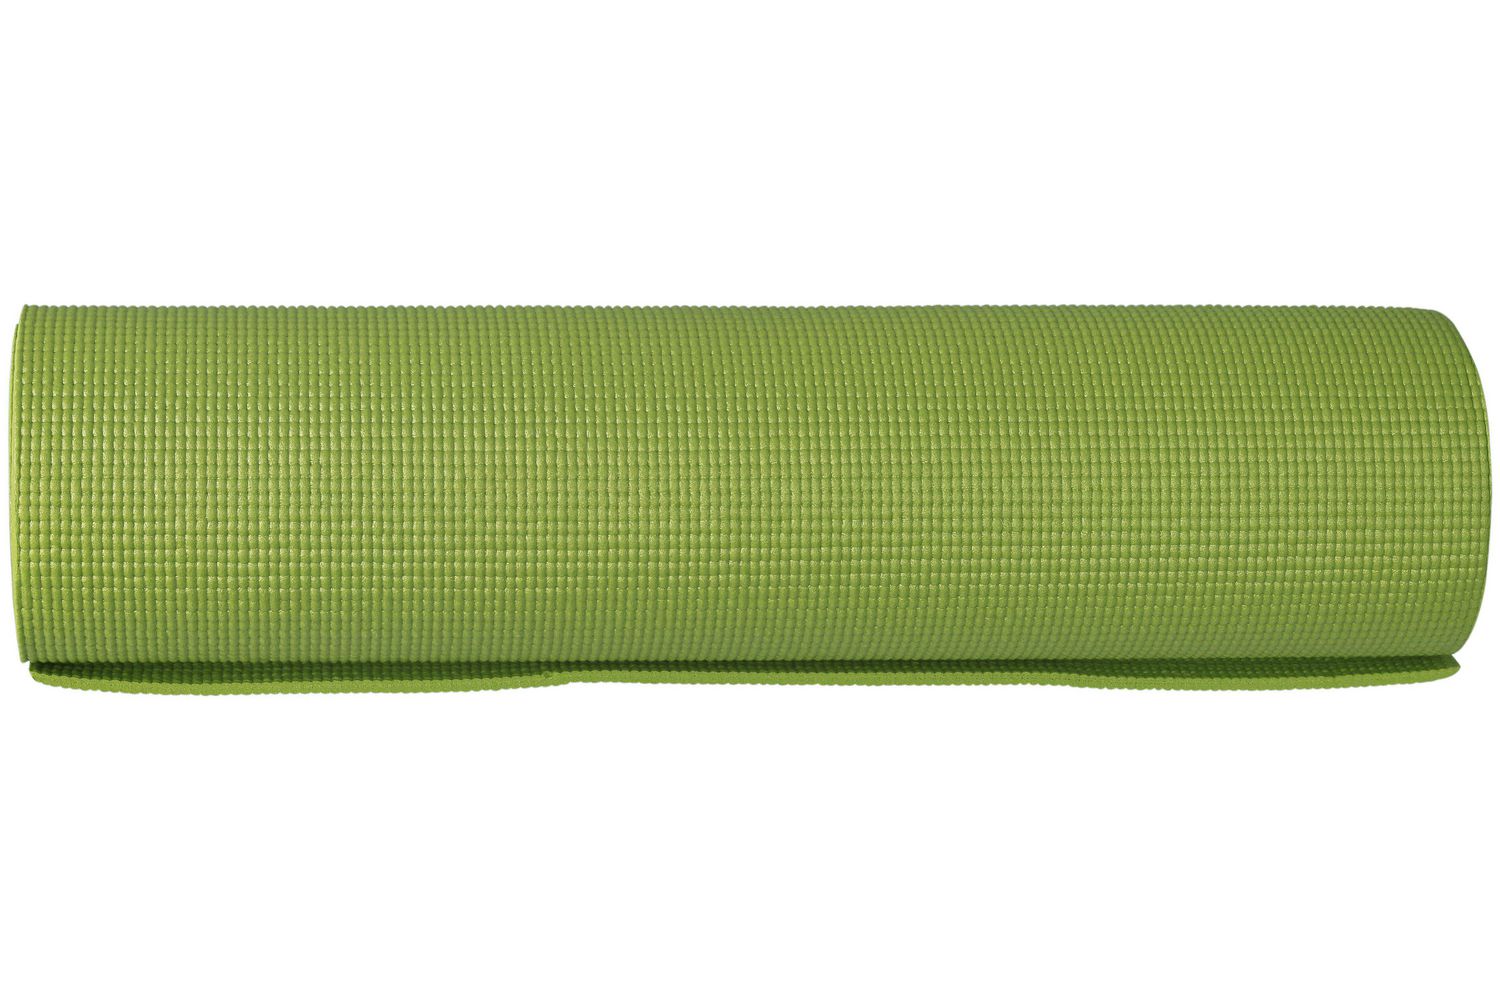 Tapis de yoga pour l'exercice et mise en forme - Vert pâle. Colour: light  green, Fr